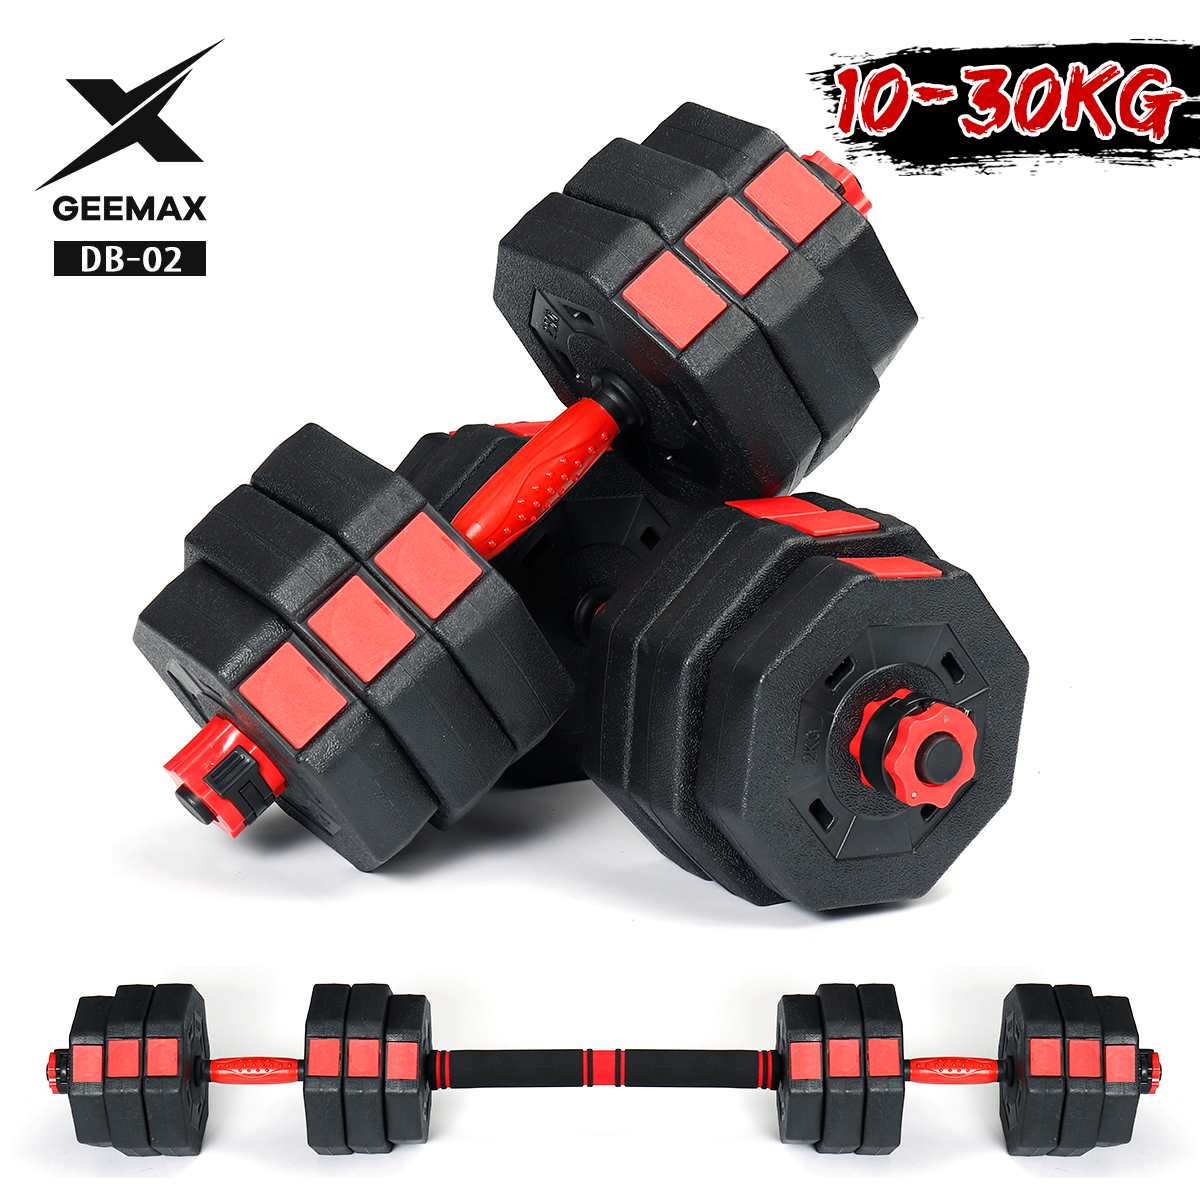 Gemax-Mancuernas ajustables para gimnasio, 10-30KG, con barra, para entrenamiento físico, antideslizantes, herramientas de ejercicio